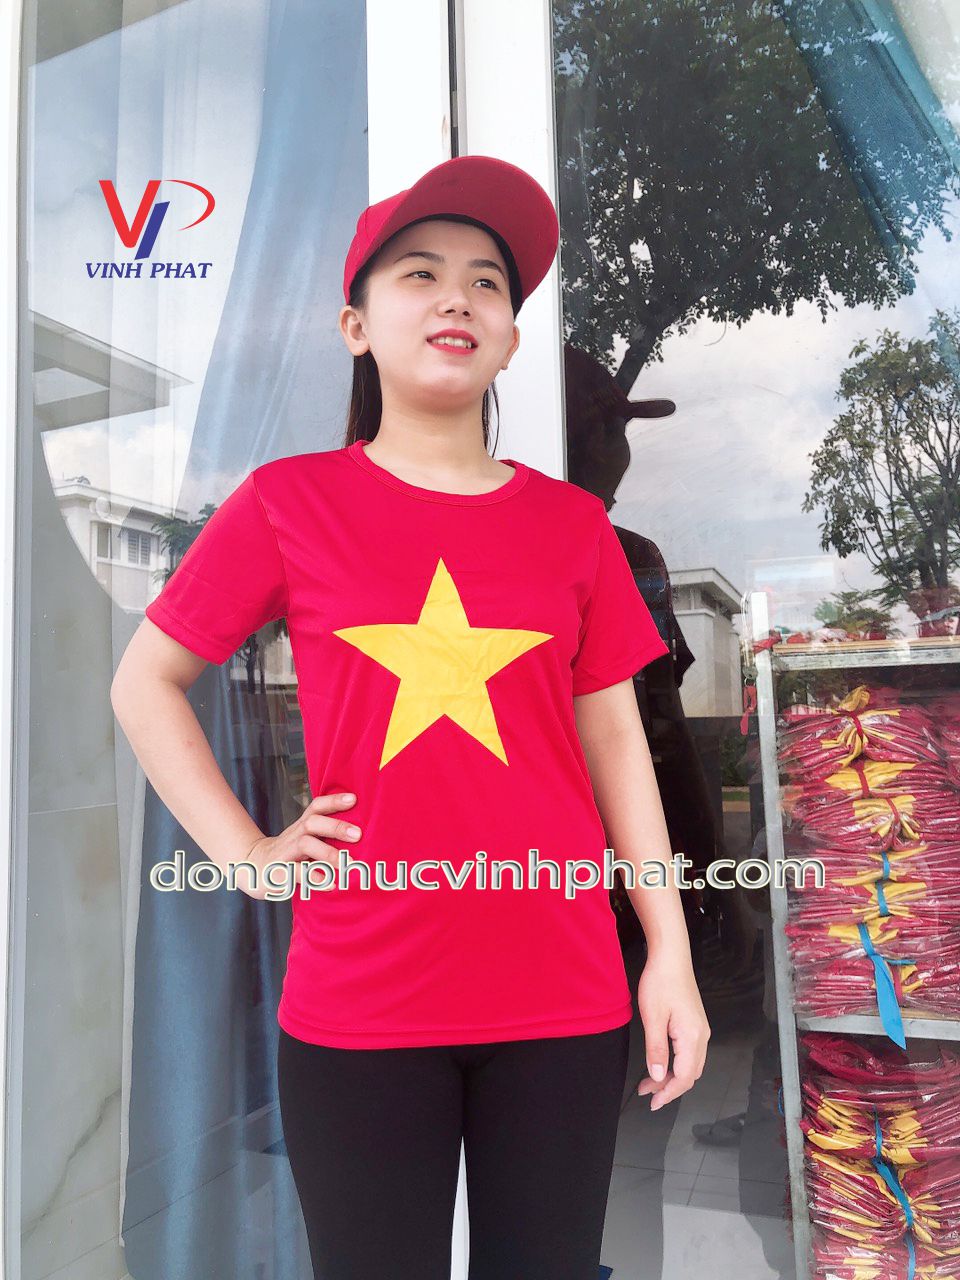 Đồng phục áo cờ đỏ sao vàng đã trở thành hình ảnh truyền thống của Việt Nam, mang lại sự tự hào cho mỗi người dân. Từ những chiến thắng lịch sử, đến những thành tựu về kinh tế, xã hội, chúng ta đều luôn tự hào với bản sắc dân tộc của mình. Hãy cùng nhau chiêm ngưỡng các hình ảnh đẹp về áo cờ đỏ sao vàng và cảm nhận niềm tự hào đó.